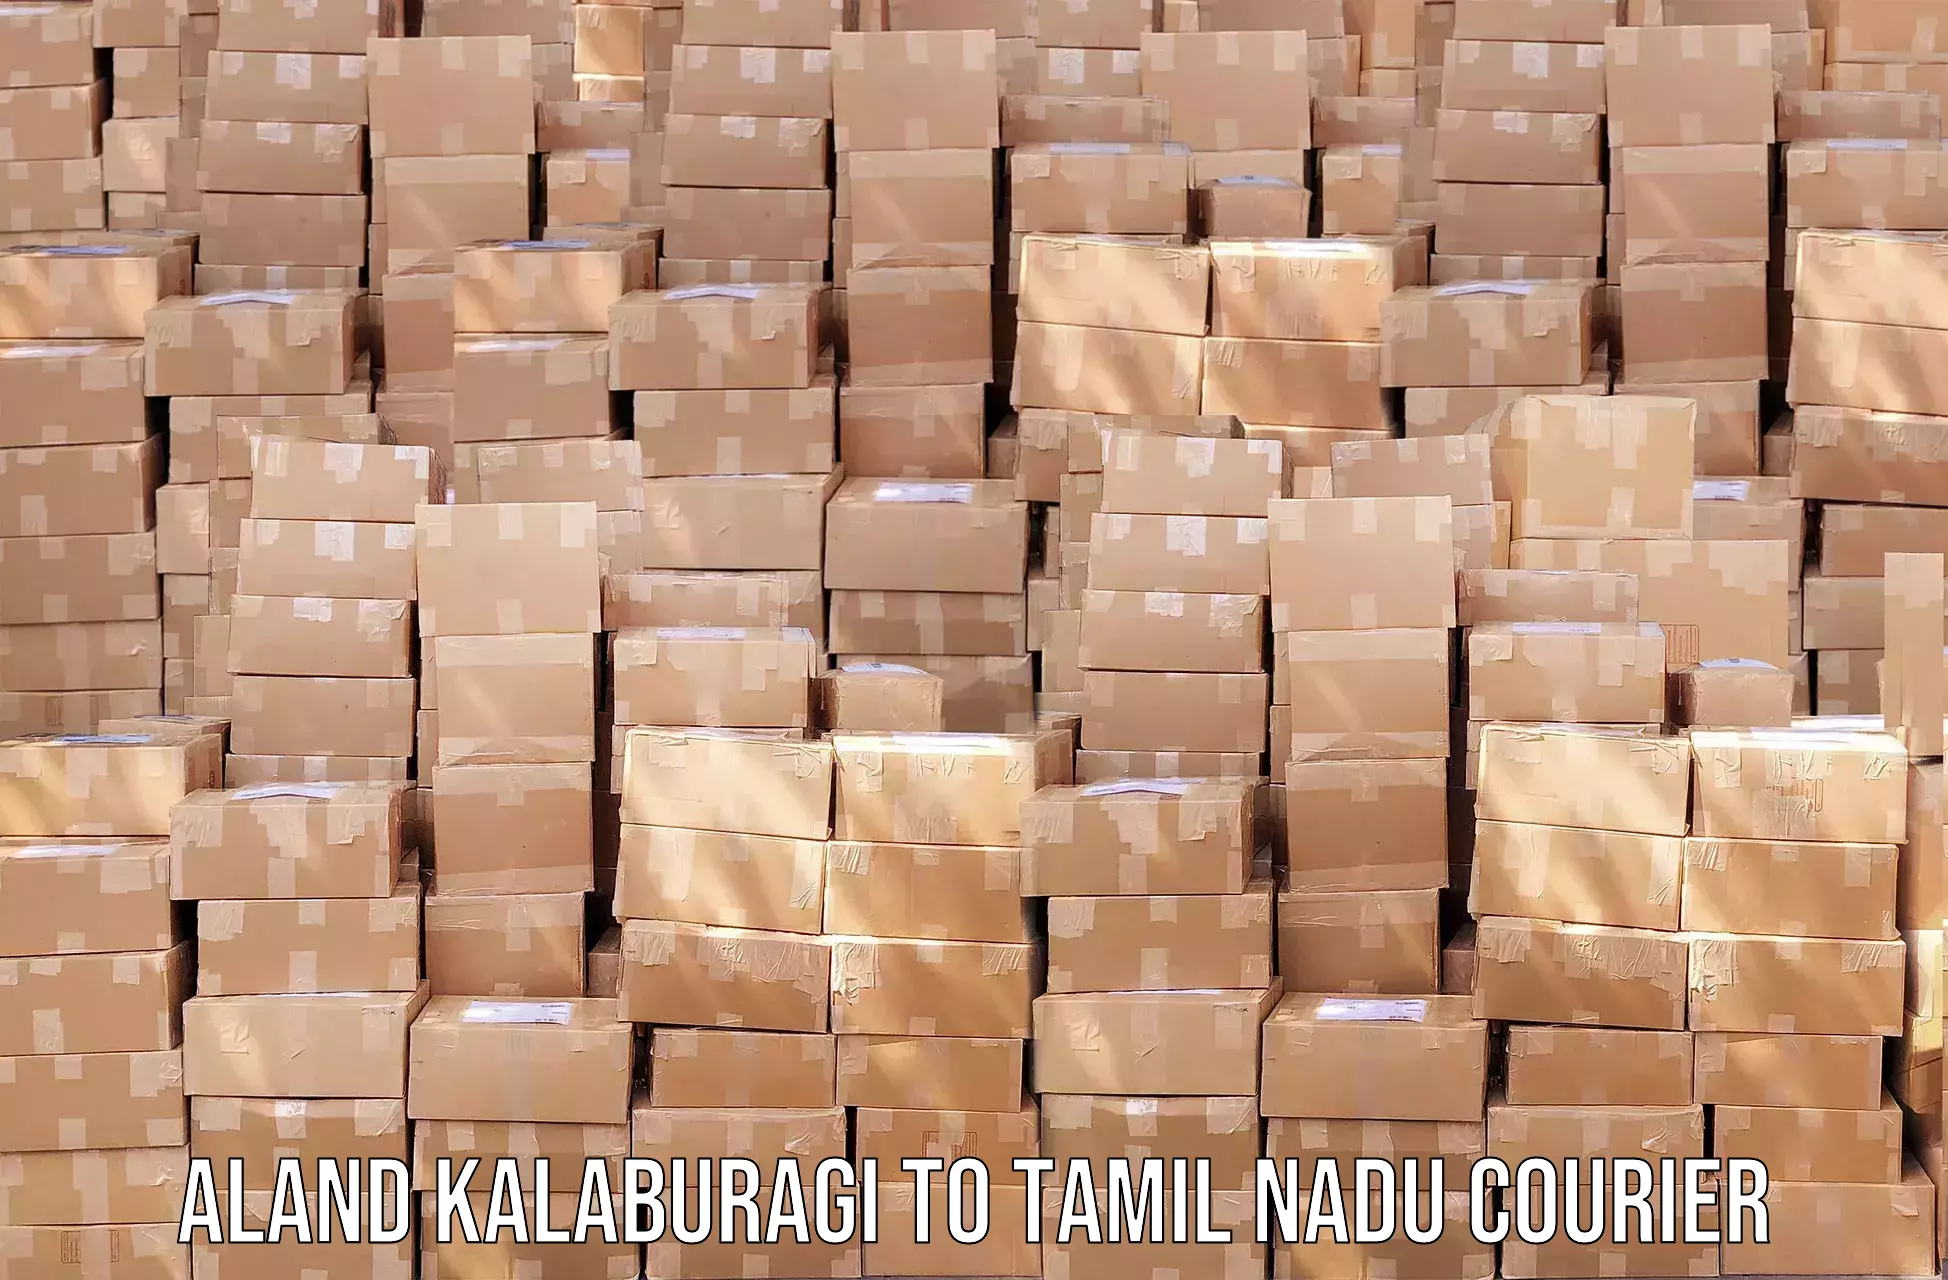 Urgent courier needs Aland Kalaburagi to Madurai